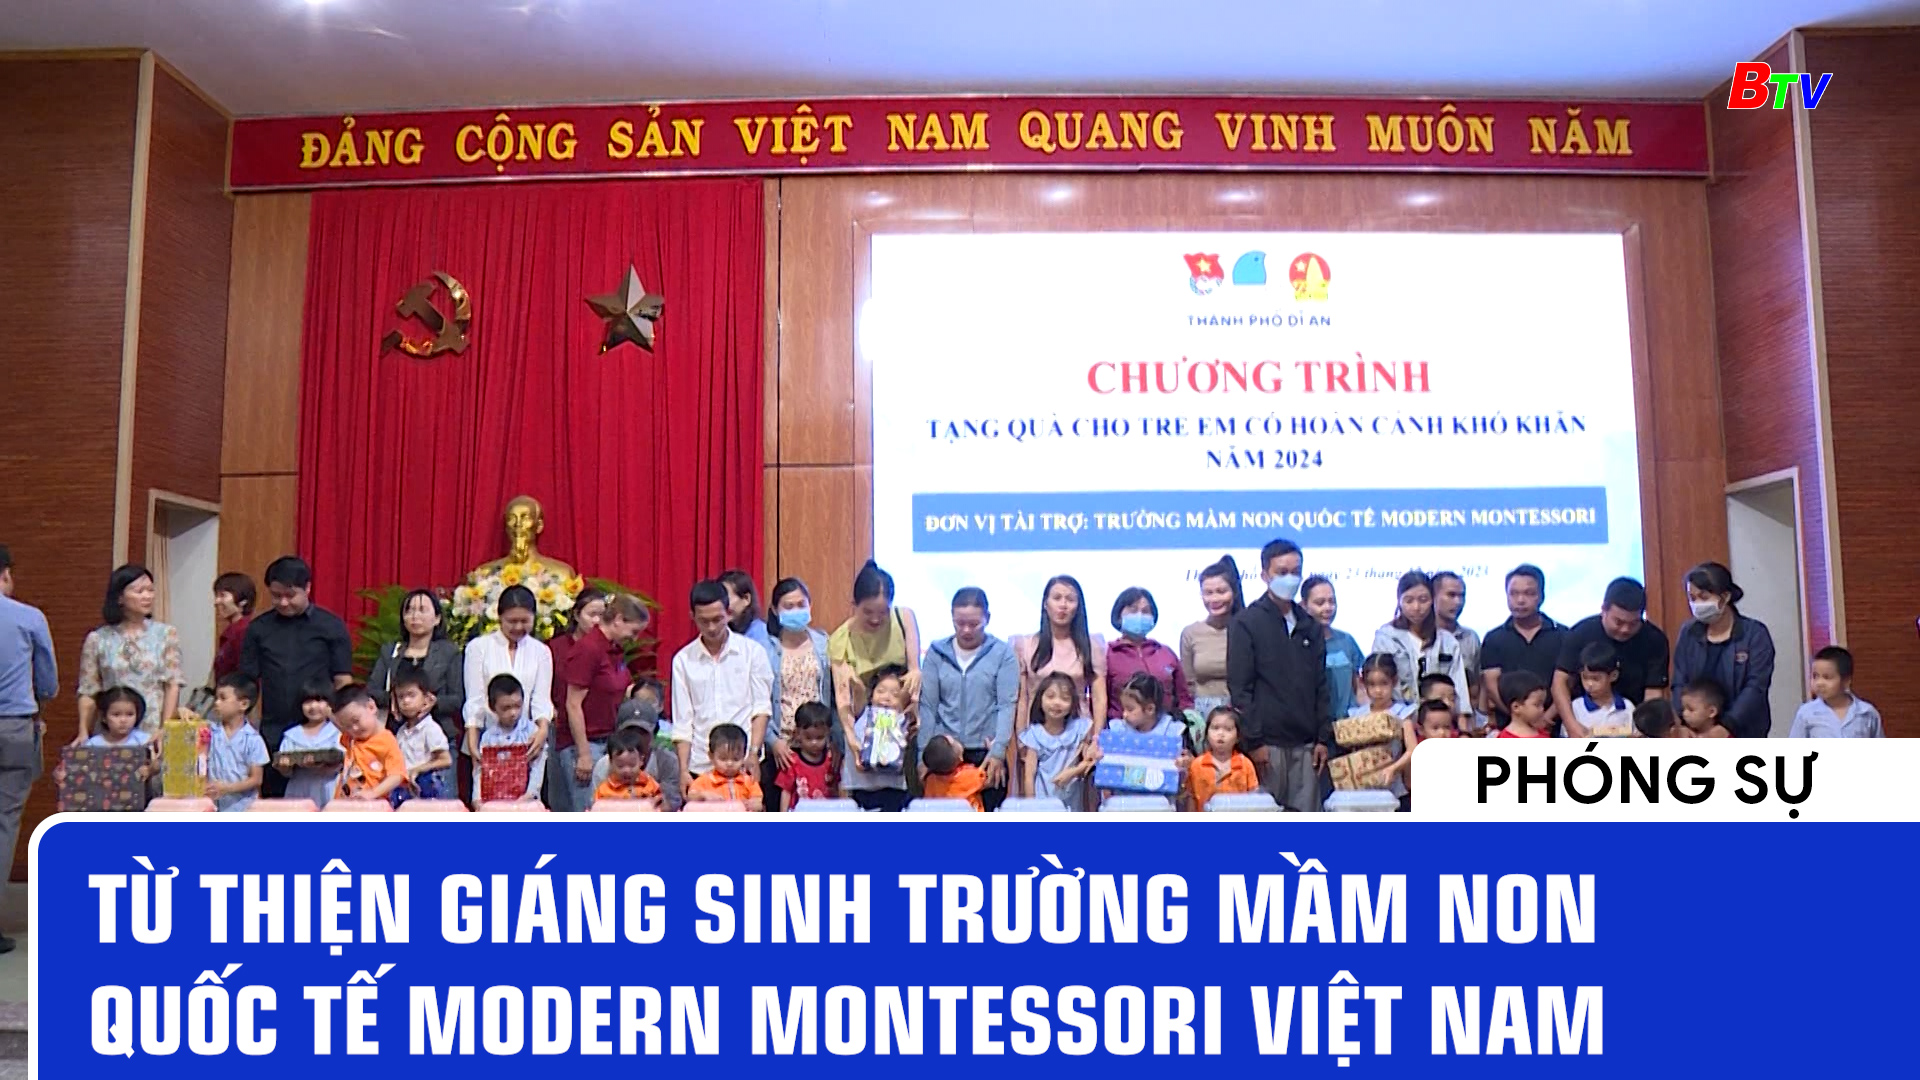 Từ thiện Giáng sinh trường mầm non Quốc tế Modern Montessori Việt Nam